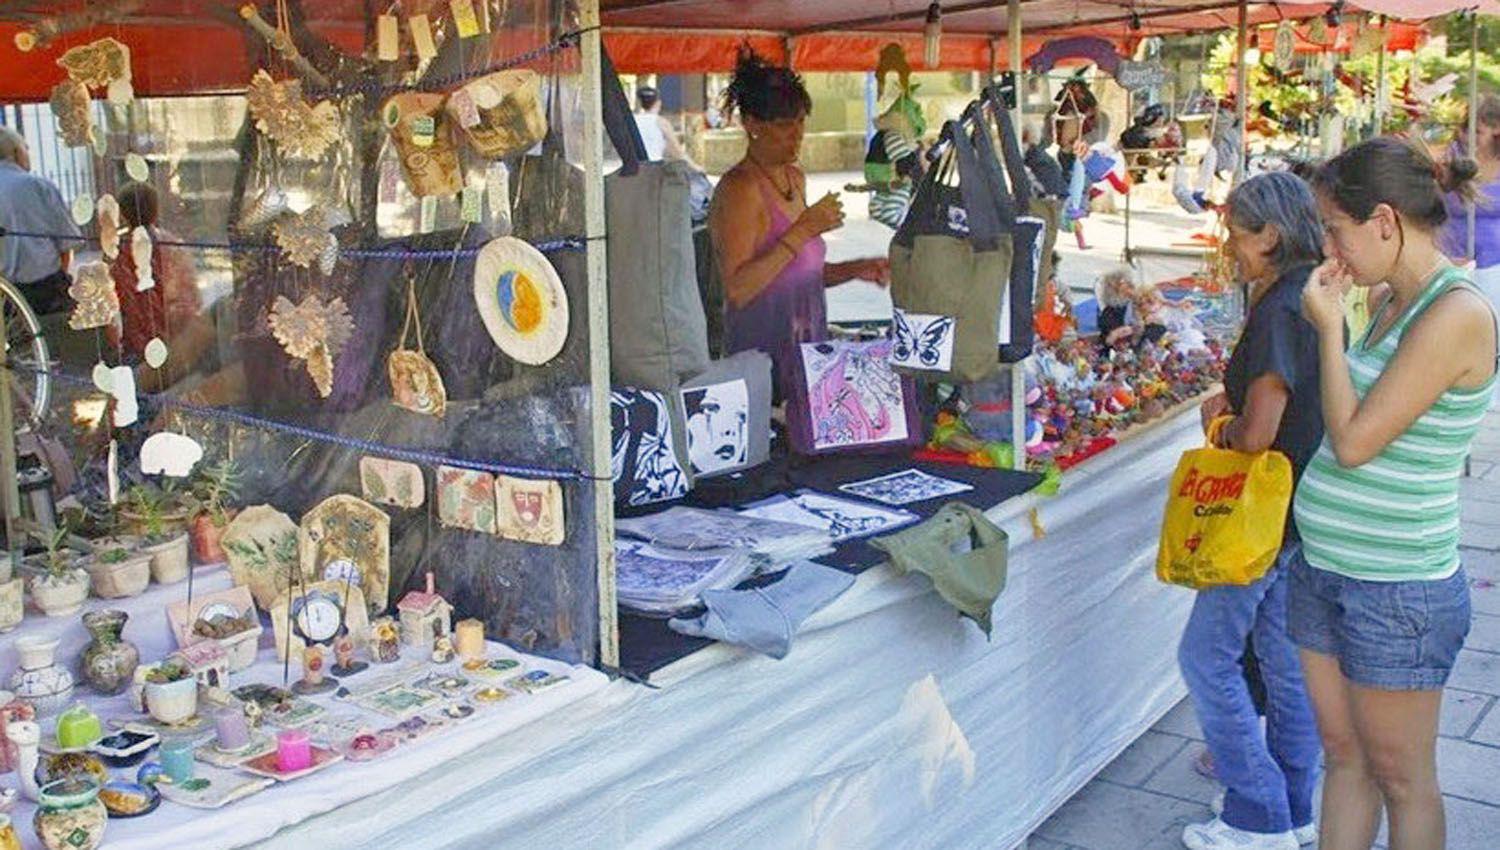 La comuna organiza una gran feria de artesanos y emprendedores locales